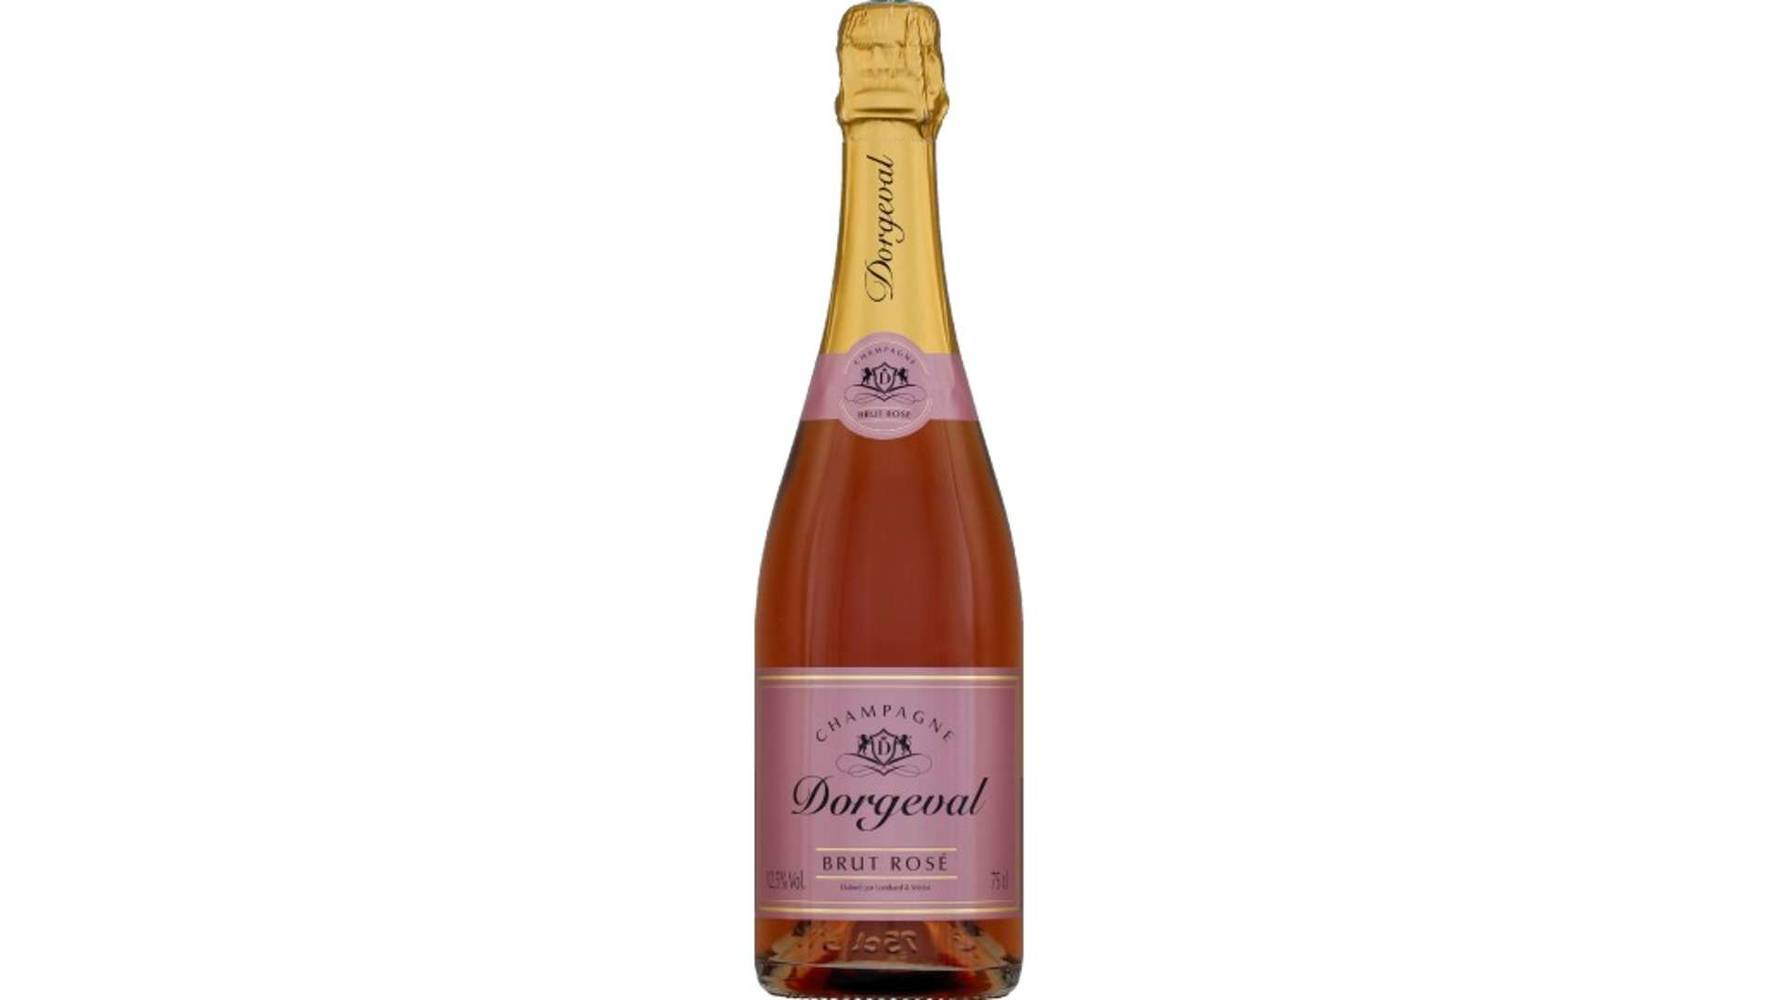 Monoprix Champagne brut rose La bouteille de 75 cl